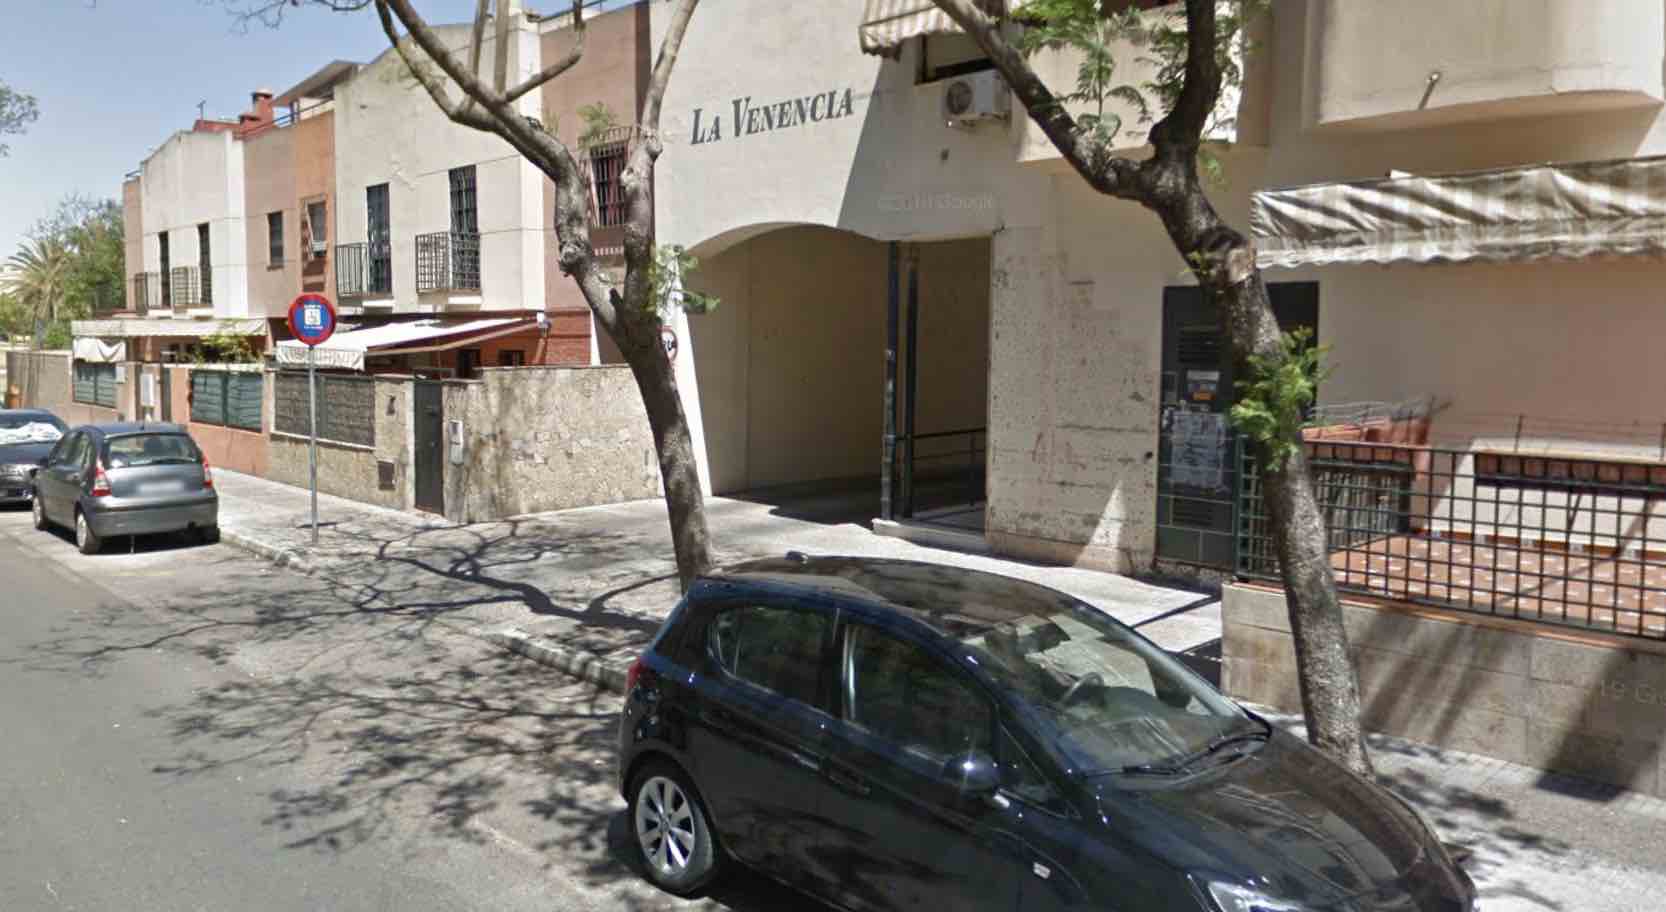 Acceso a la urbanización La Venencia, en Puerta del Sur, en Jerez. FOTO: Google Maps